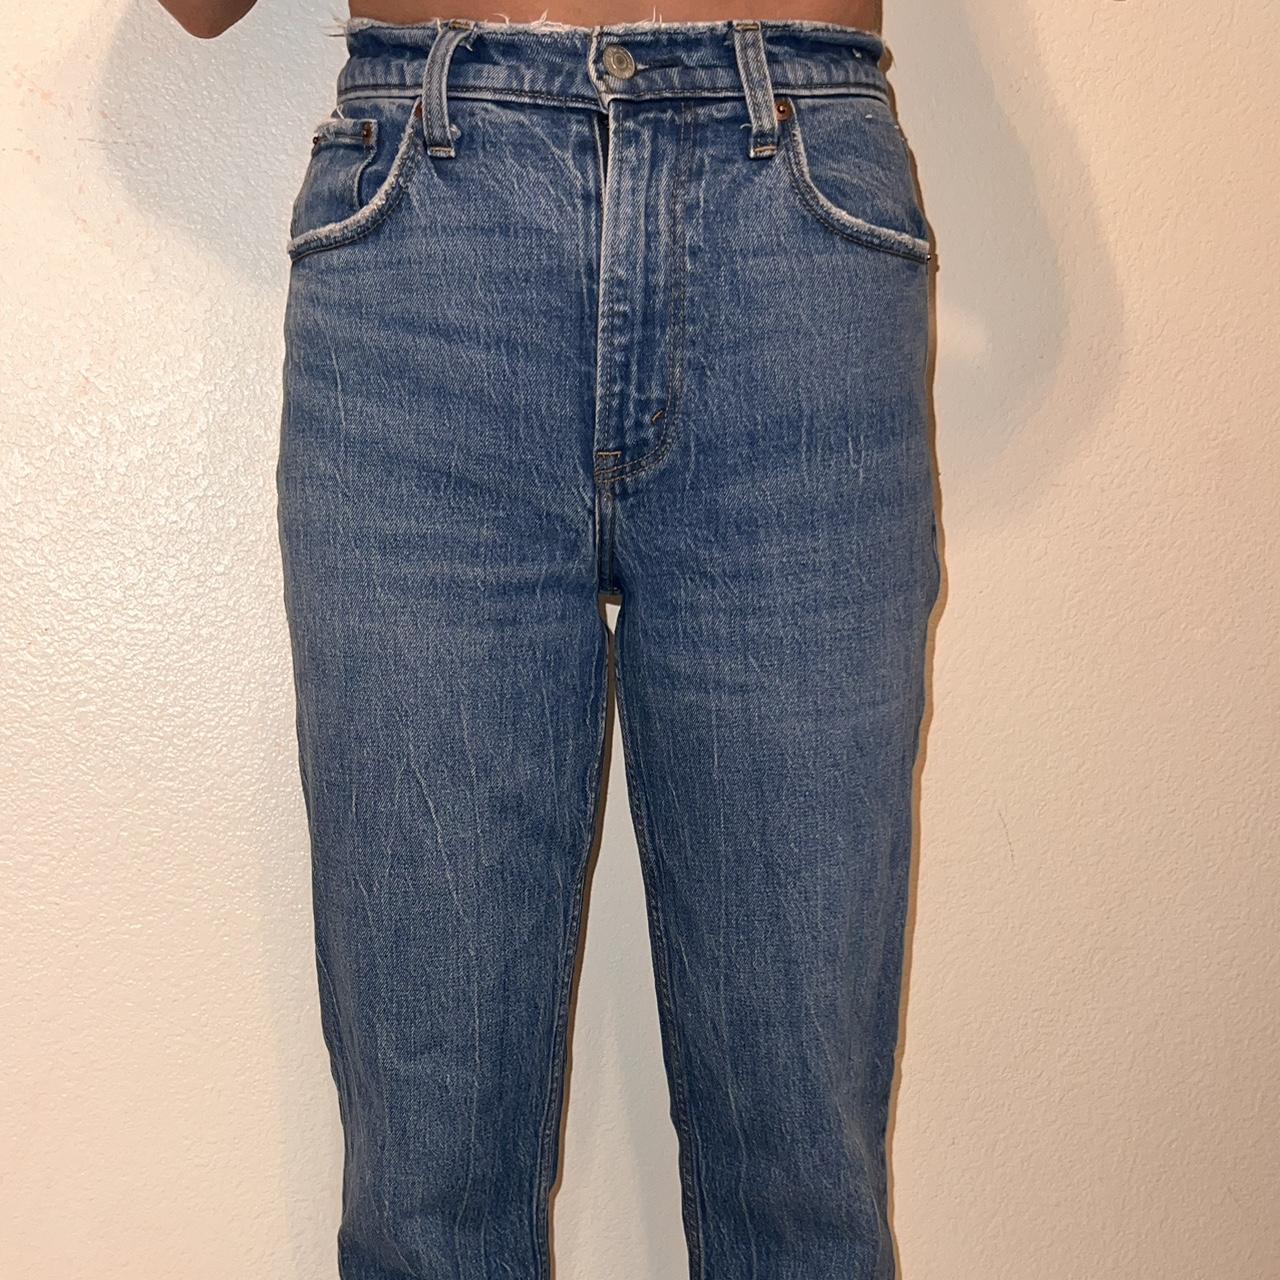 Abercrombie curve love jeans size 26, length short - Depop